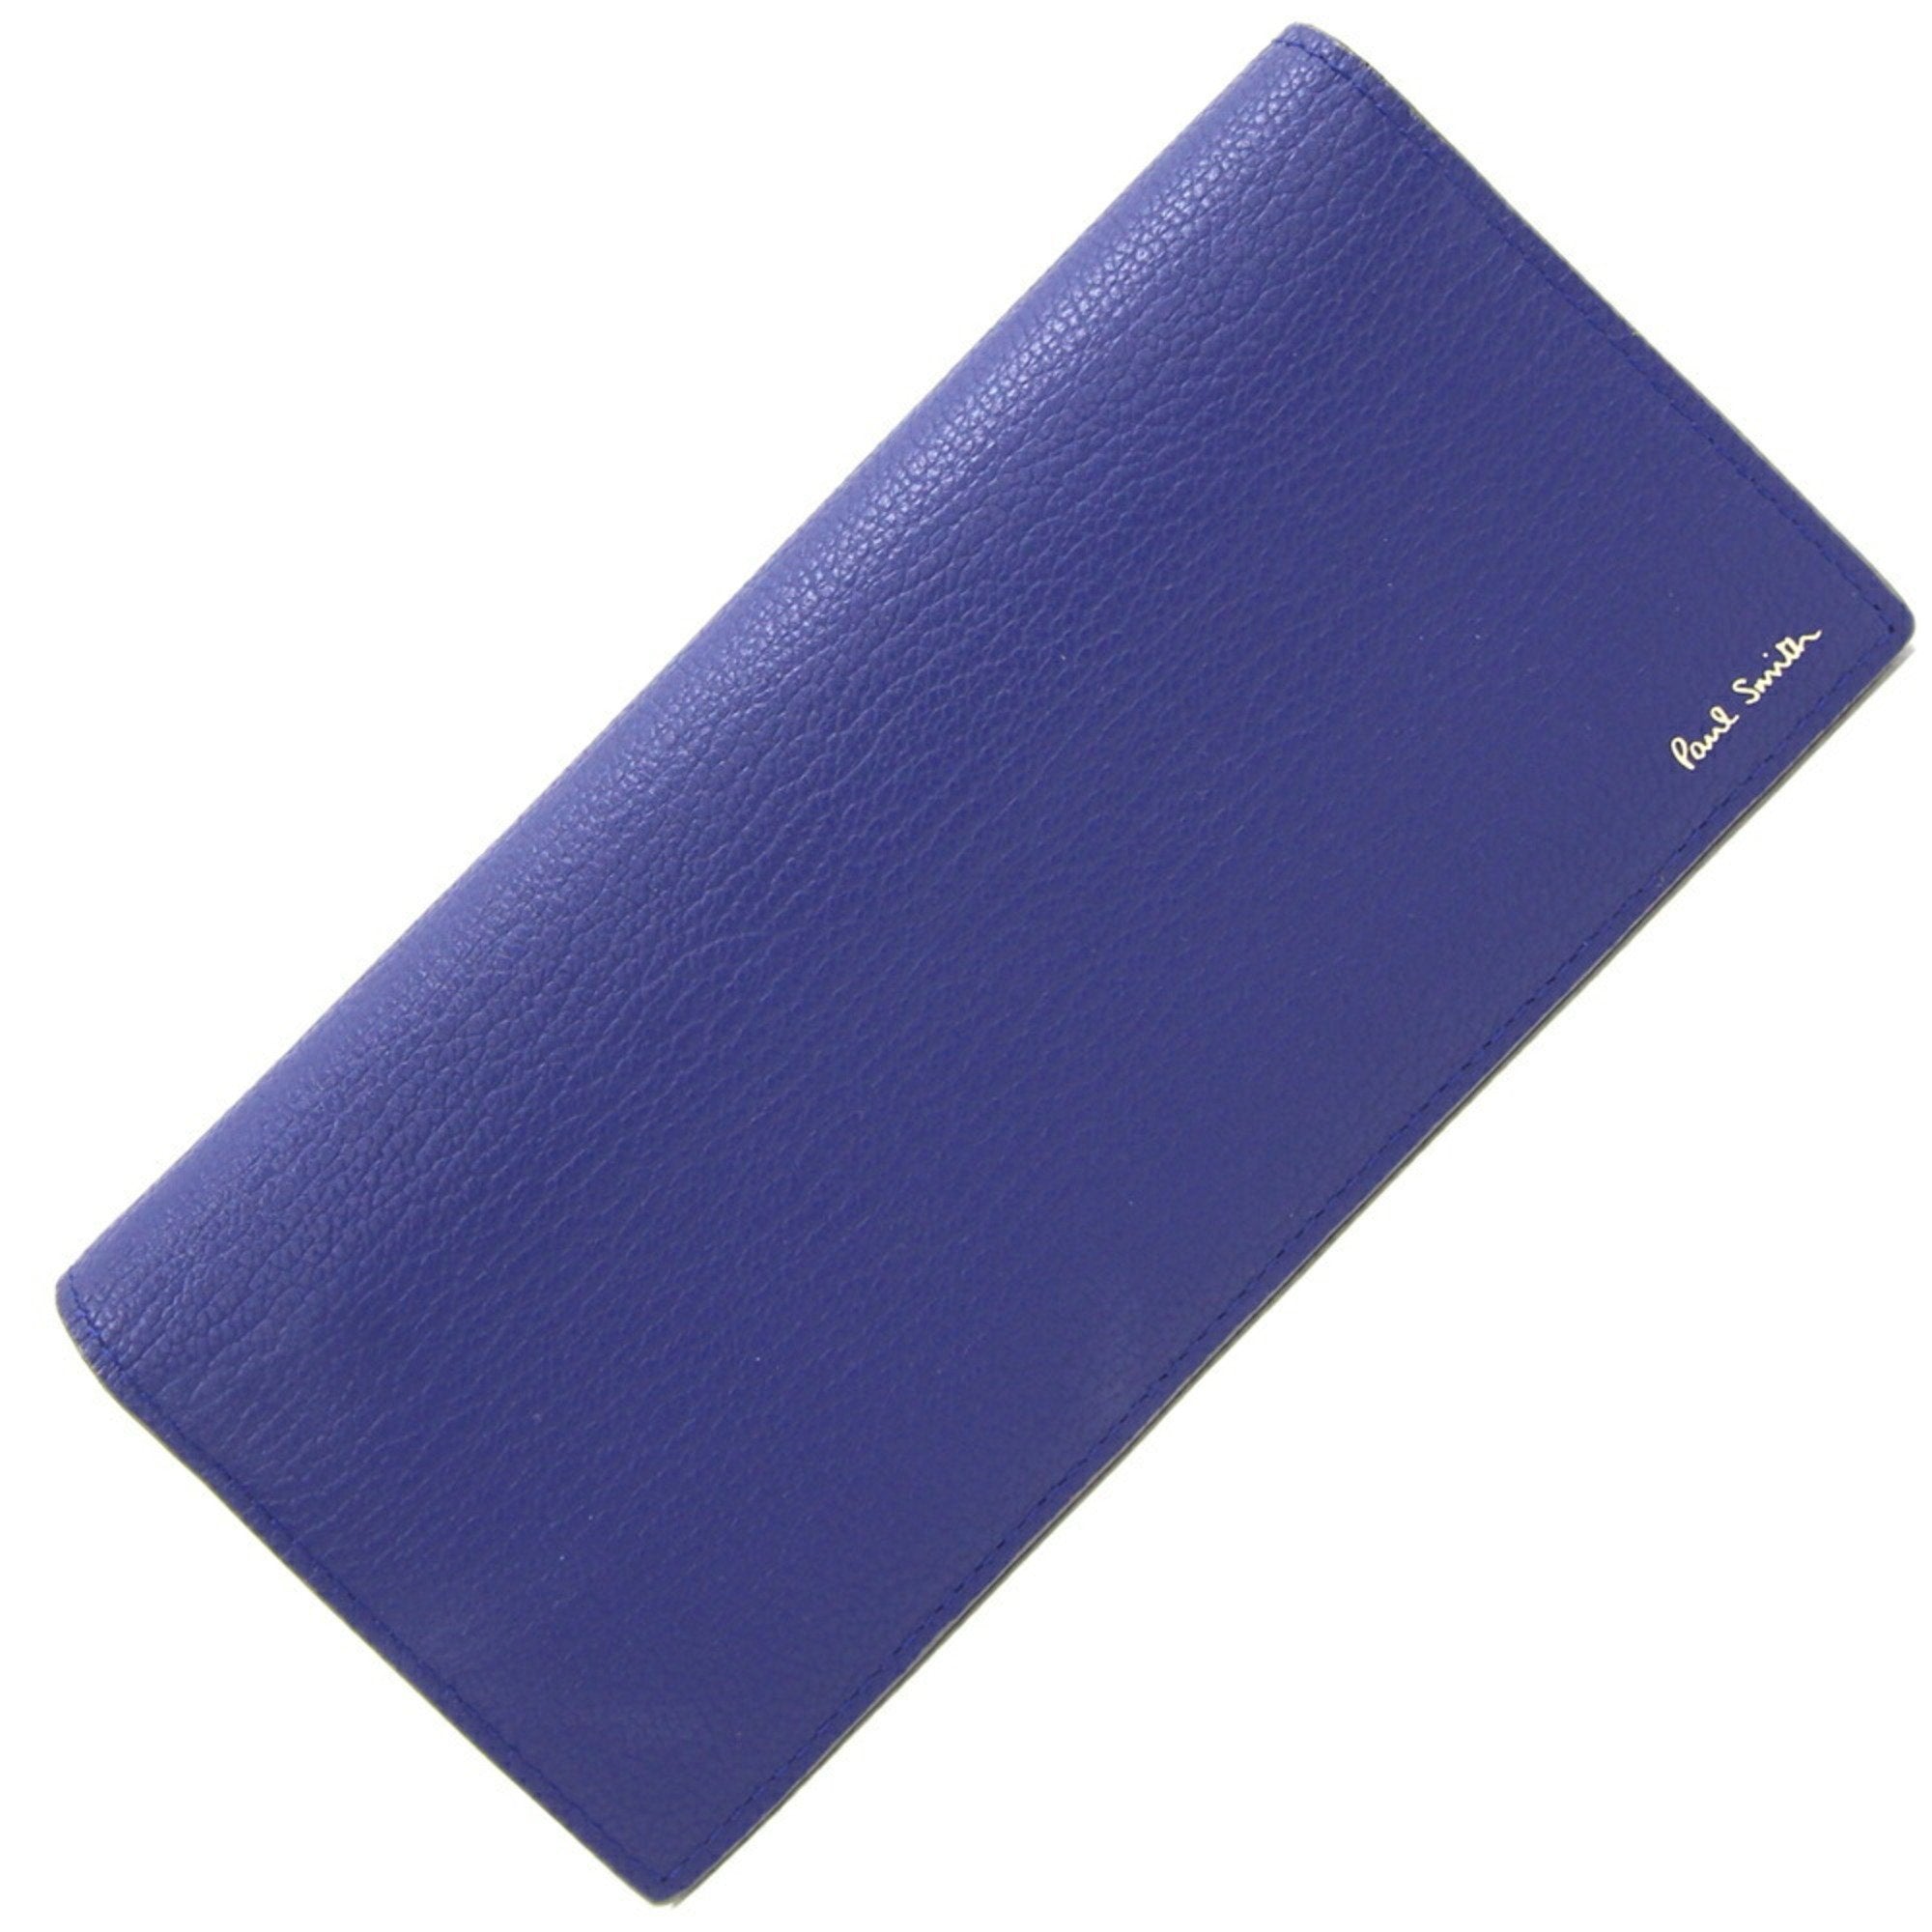 Bi-fold Long Wallet PSC814-30 Blue Gray Leather Men's